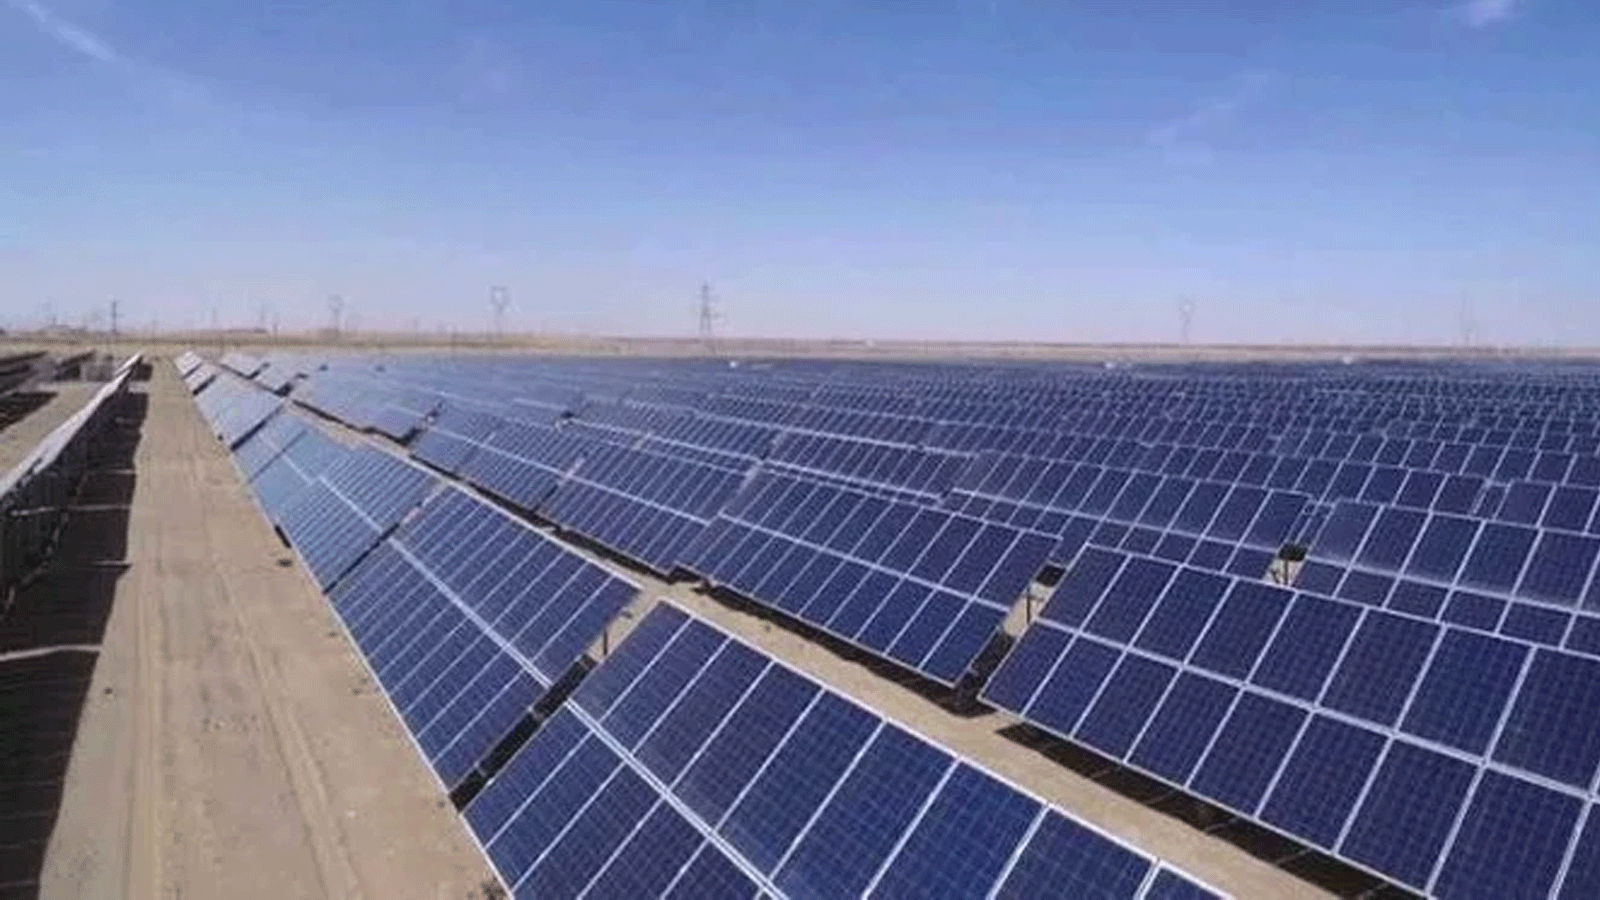 شركة سامسونغ الكورية الجنوبية تقوم ببناء محطات الطاقة الشمسية الجديدة باستثمارات أولية تزيد عن 600 مليون دولار